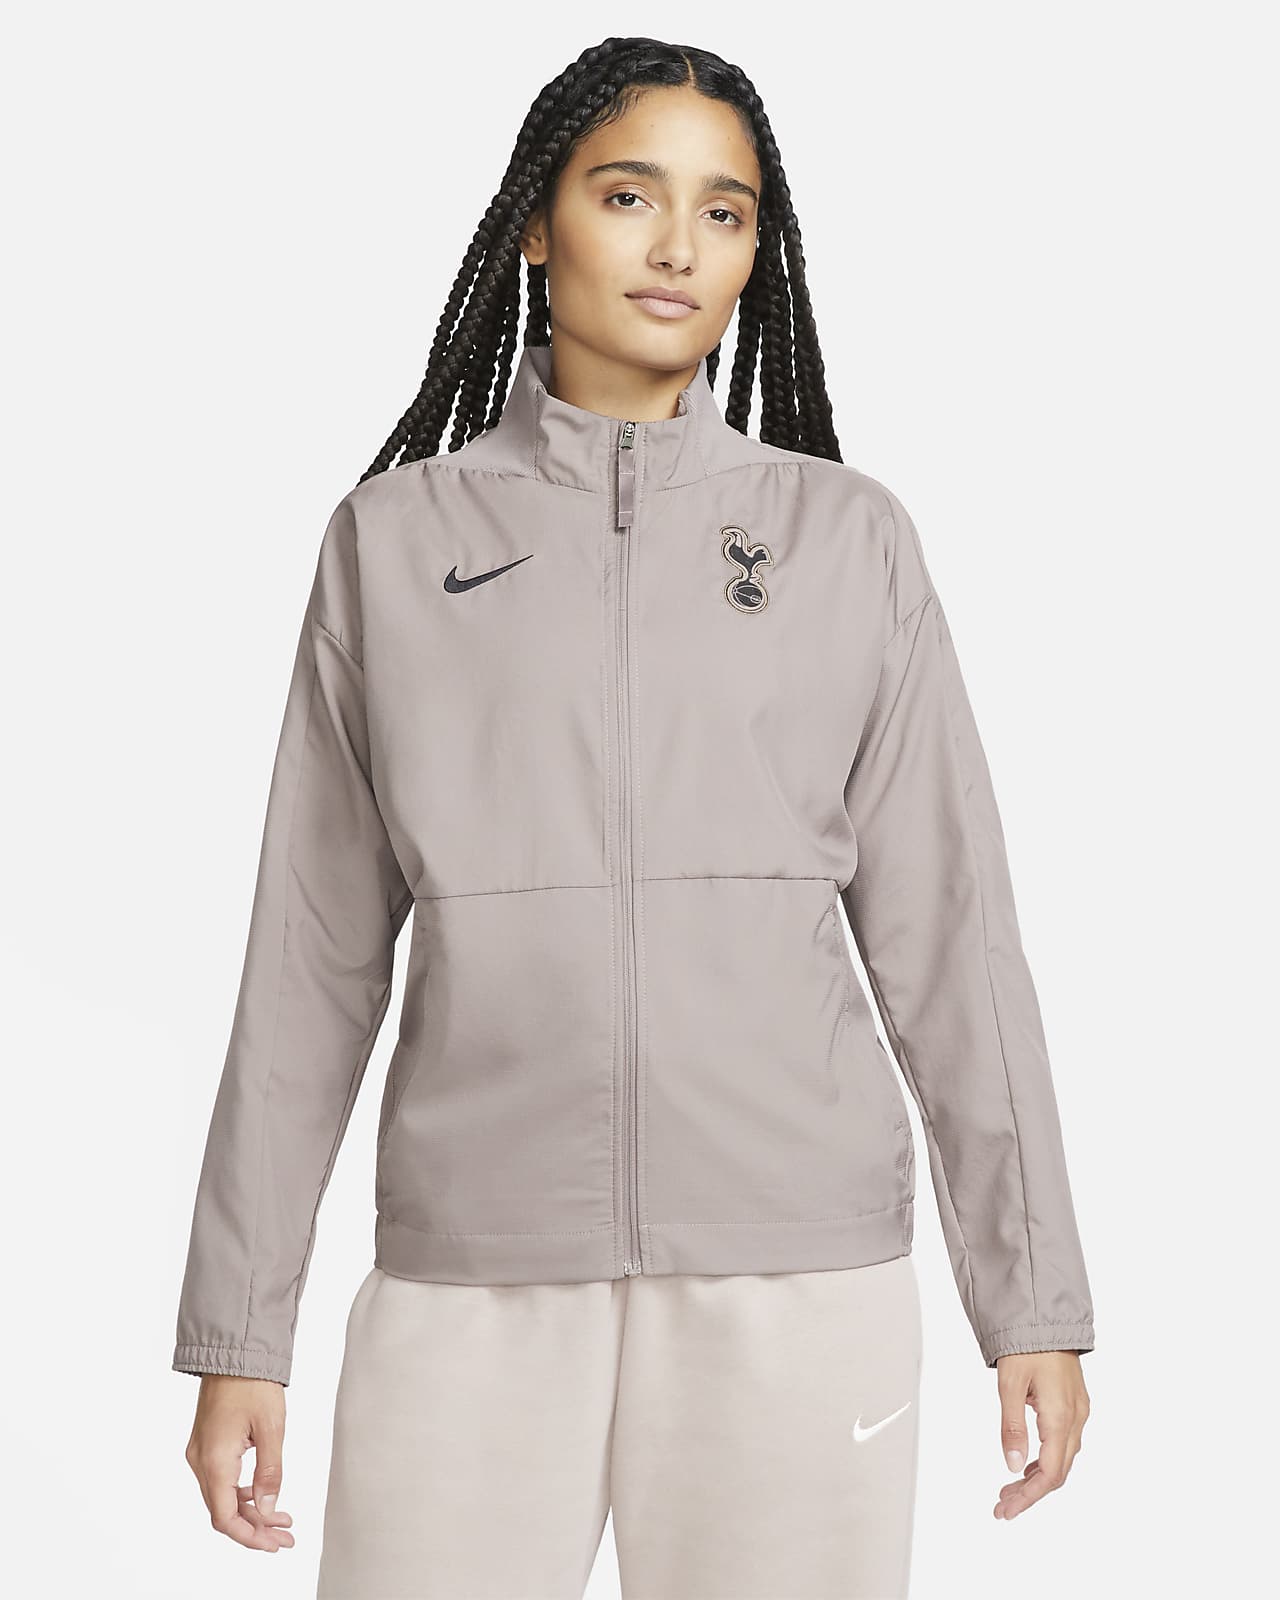 Fotbollsjacka i vävt material Tottenham Hotspur (tredjeställ) med Nike Dri-FIT för kvinnor